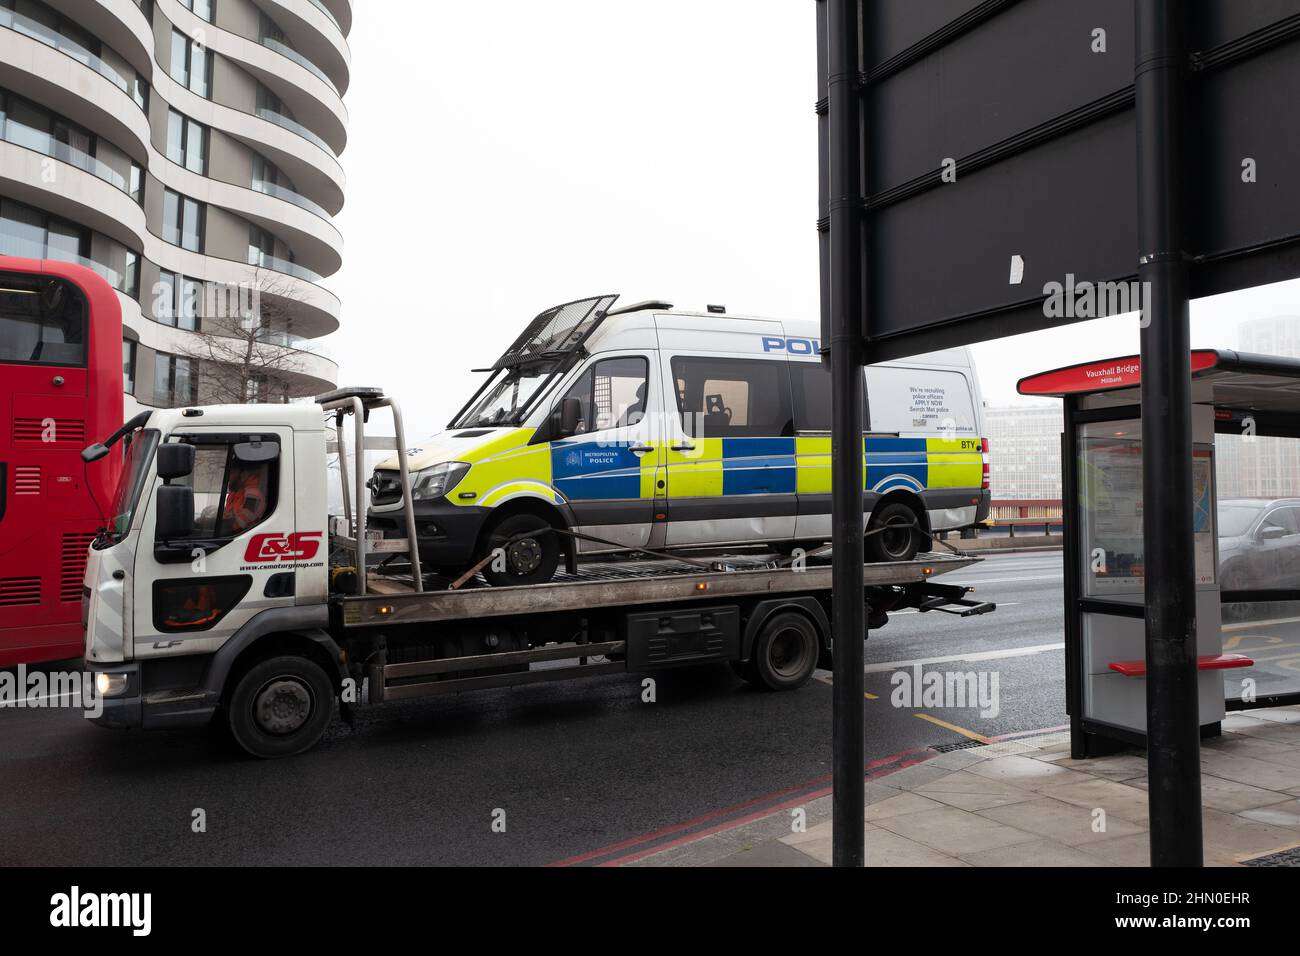 Ein Met Police Van auf der Rückseite eines Pannenwagens. Bild aufgenommen auf der Vauxhall Bridge, London, Großbritannien Stockfoto